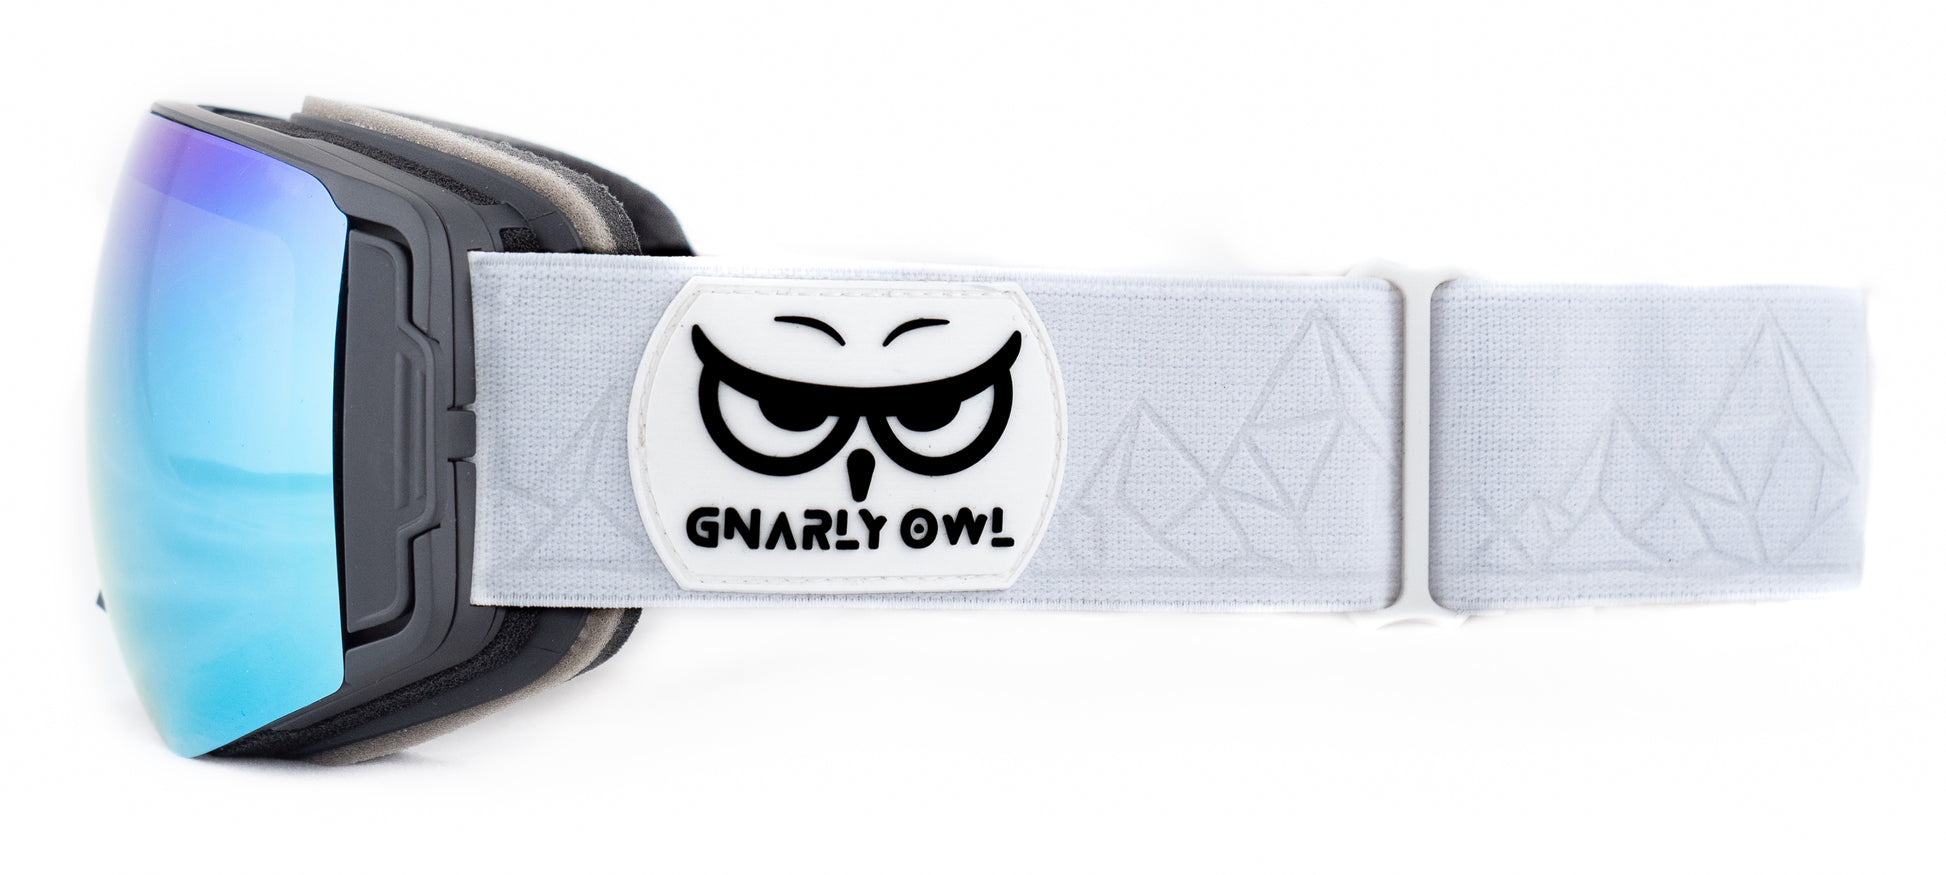 Gnarly Owl polarizační lyžařské snowboardové skialpové splitboardové brýle česká značka ledovcově modrý zrcadlový REVO zorník magnetické výměnné zorníky bezrámečkový design gumové logo sova embosovaný bílý pásek